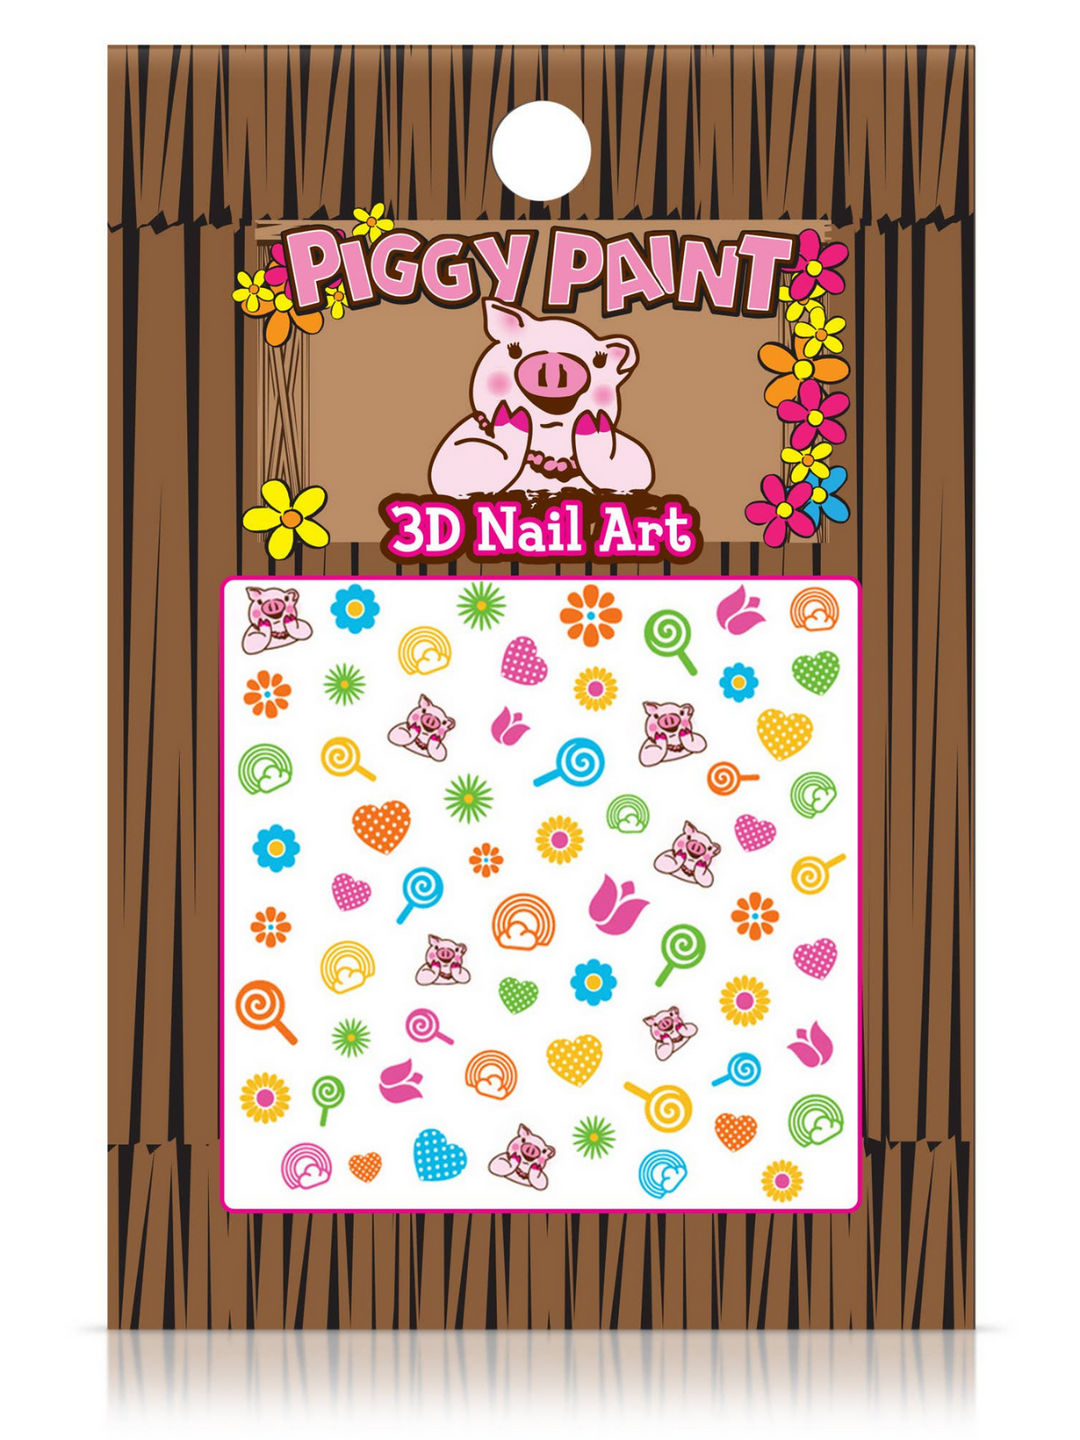 Piggy Paint 3D Nail Art - Blossom